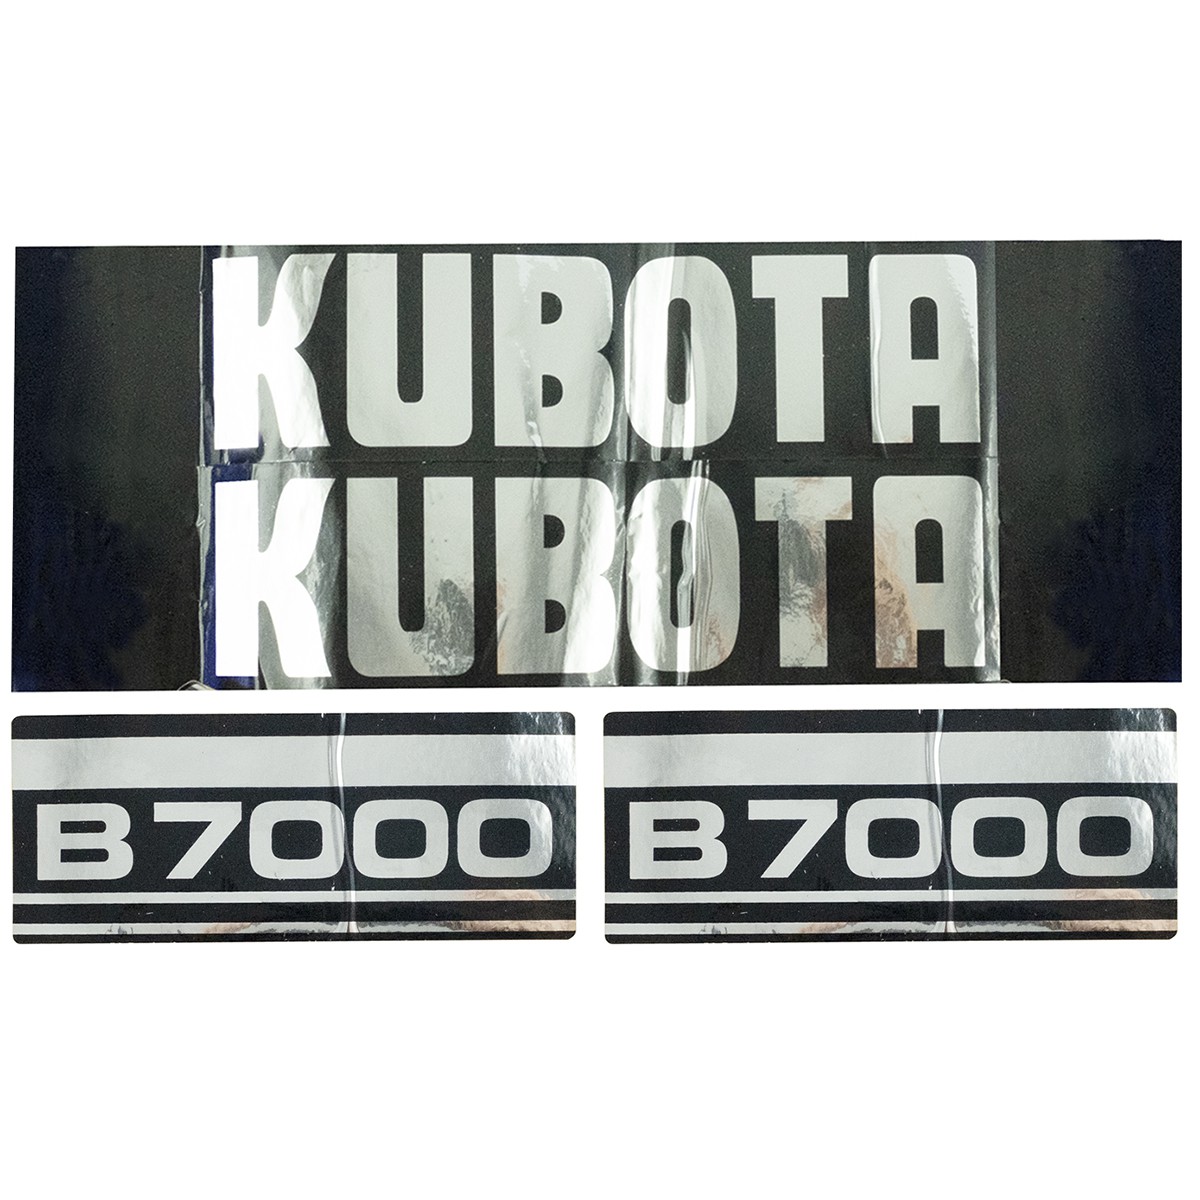 Naklejki Kubota B7000